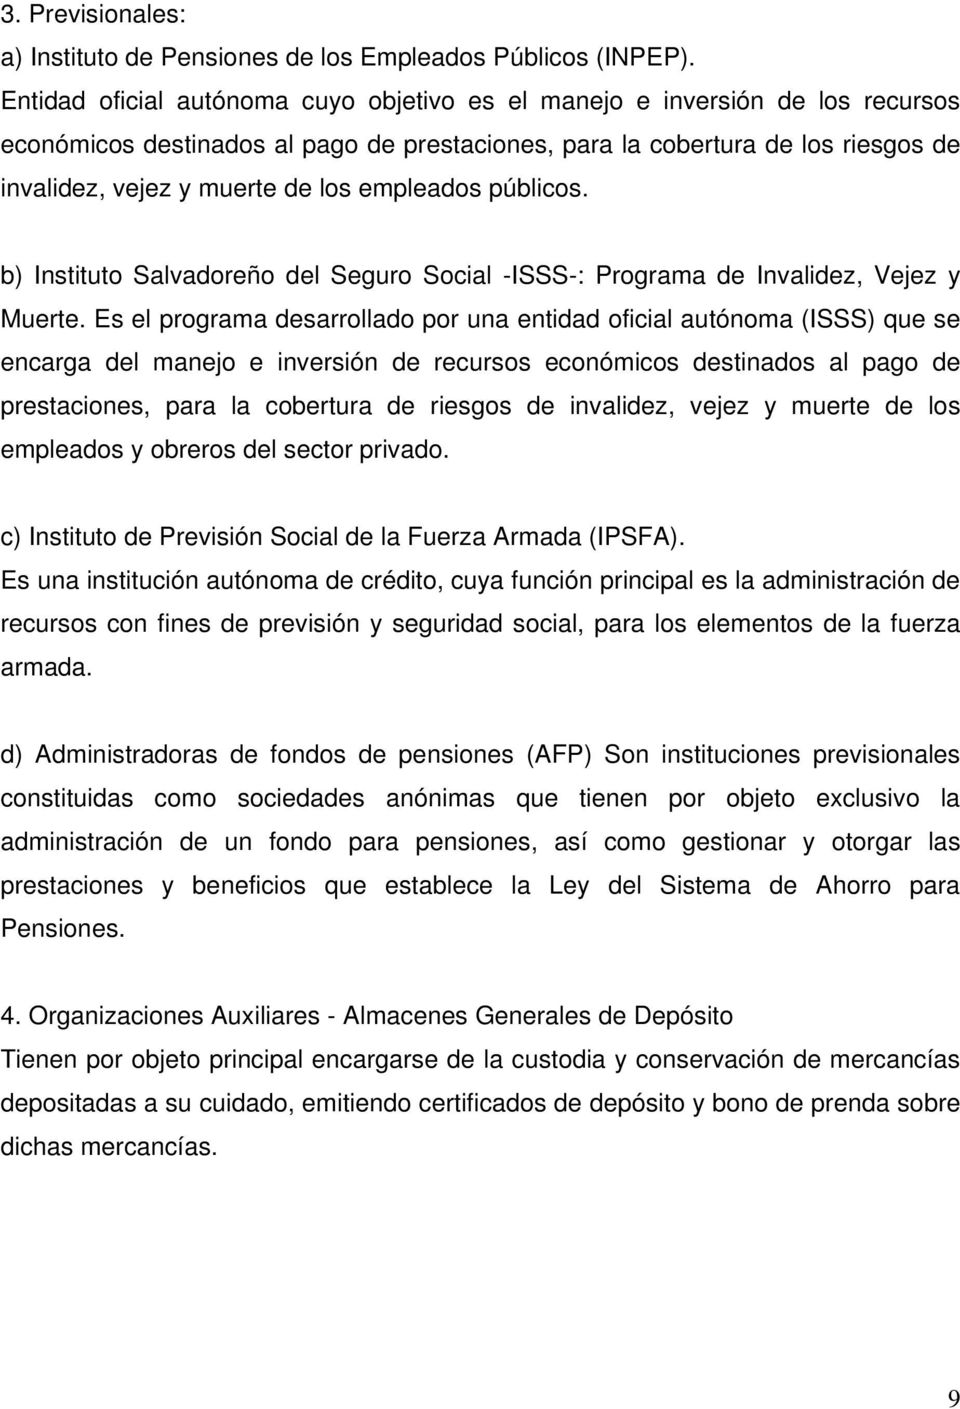 empleados públicos. b) Instituto Salvadoreño del Seguro Social -ISSS-: Programa de Invalidez, Vejez y Muerte.